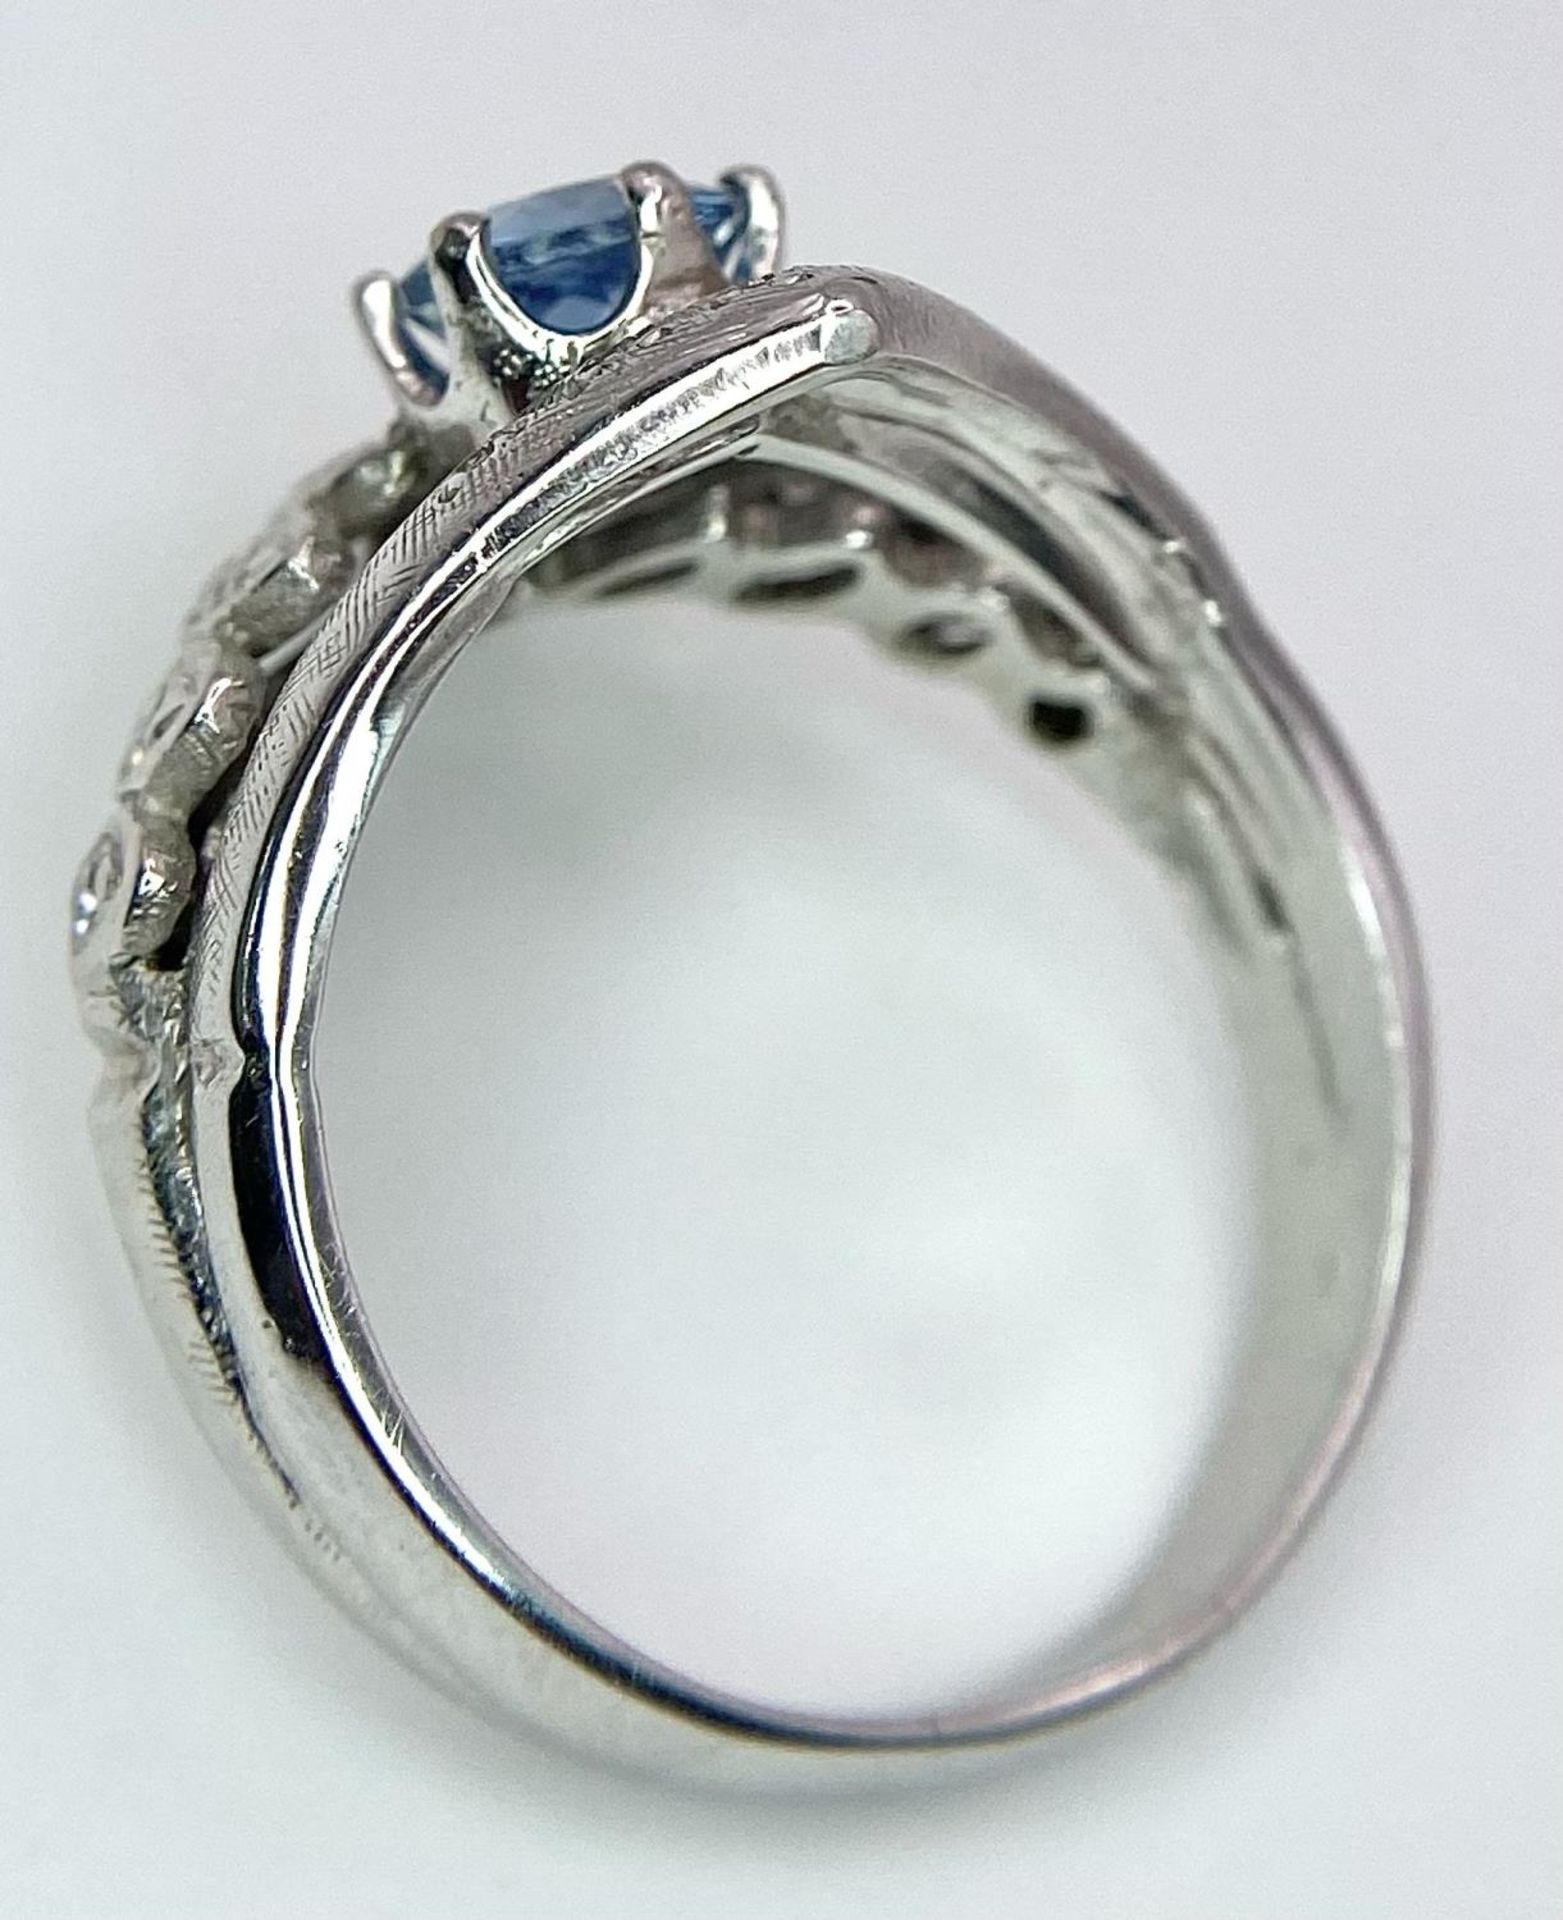 A 14K WHITE GOLD DIAMOND & BLUE TOPAZ RING - 6.2G. SIZE Q - Bild 5 aus 6